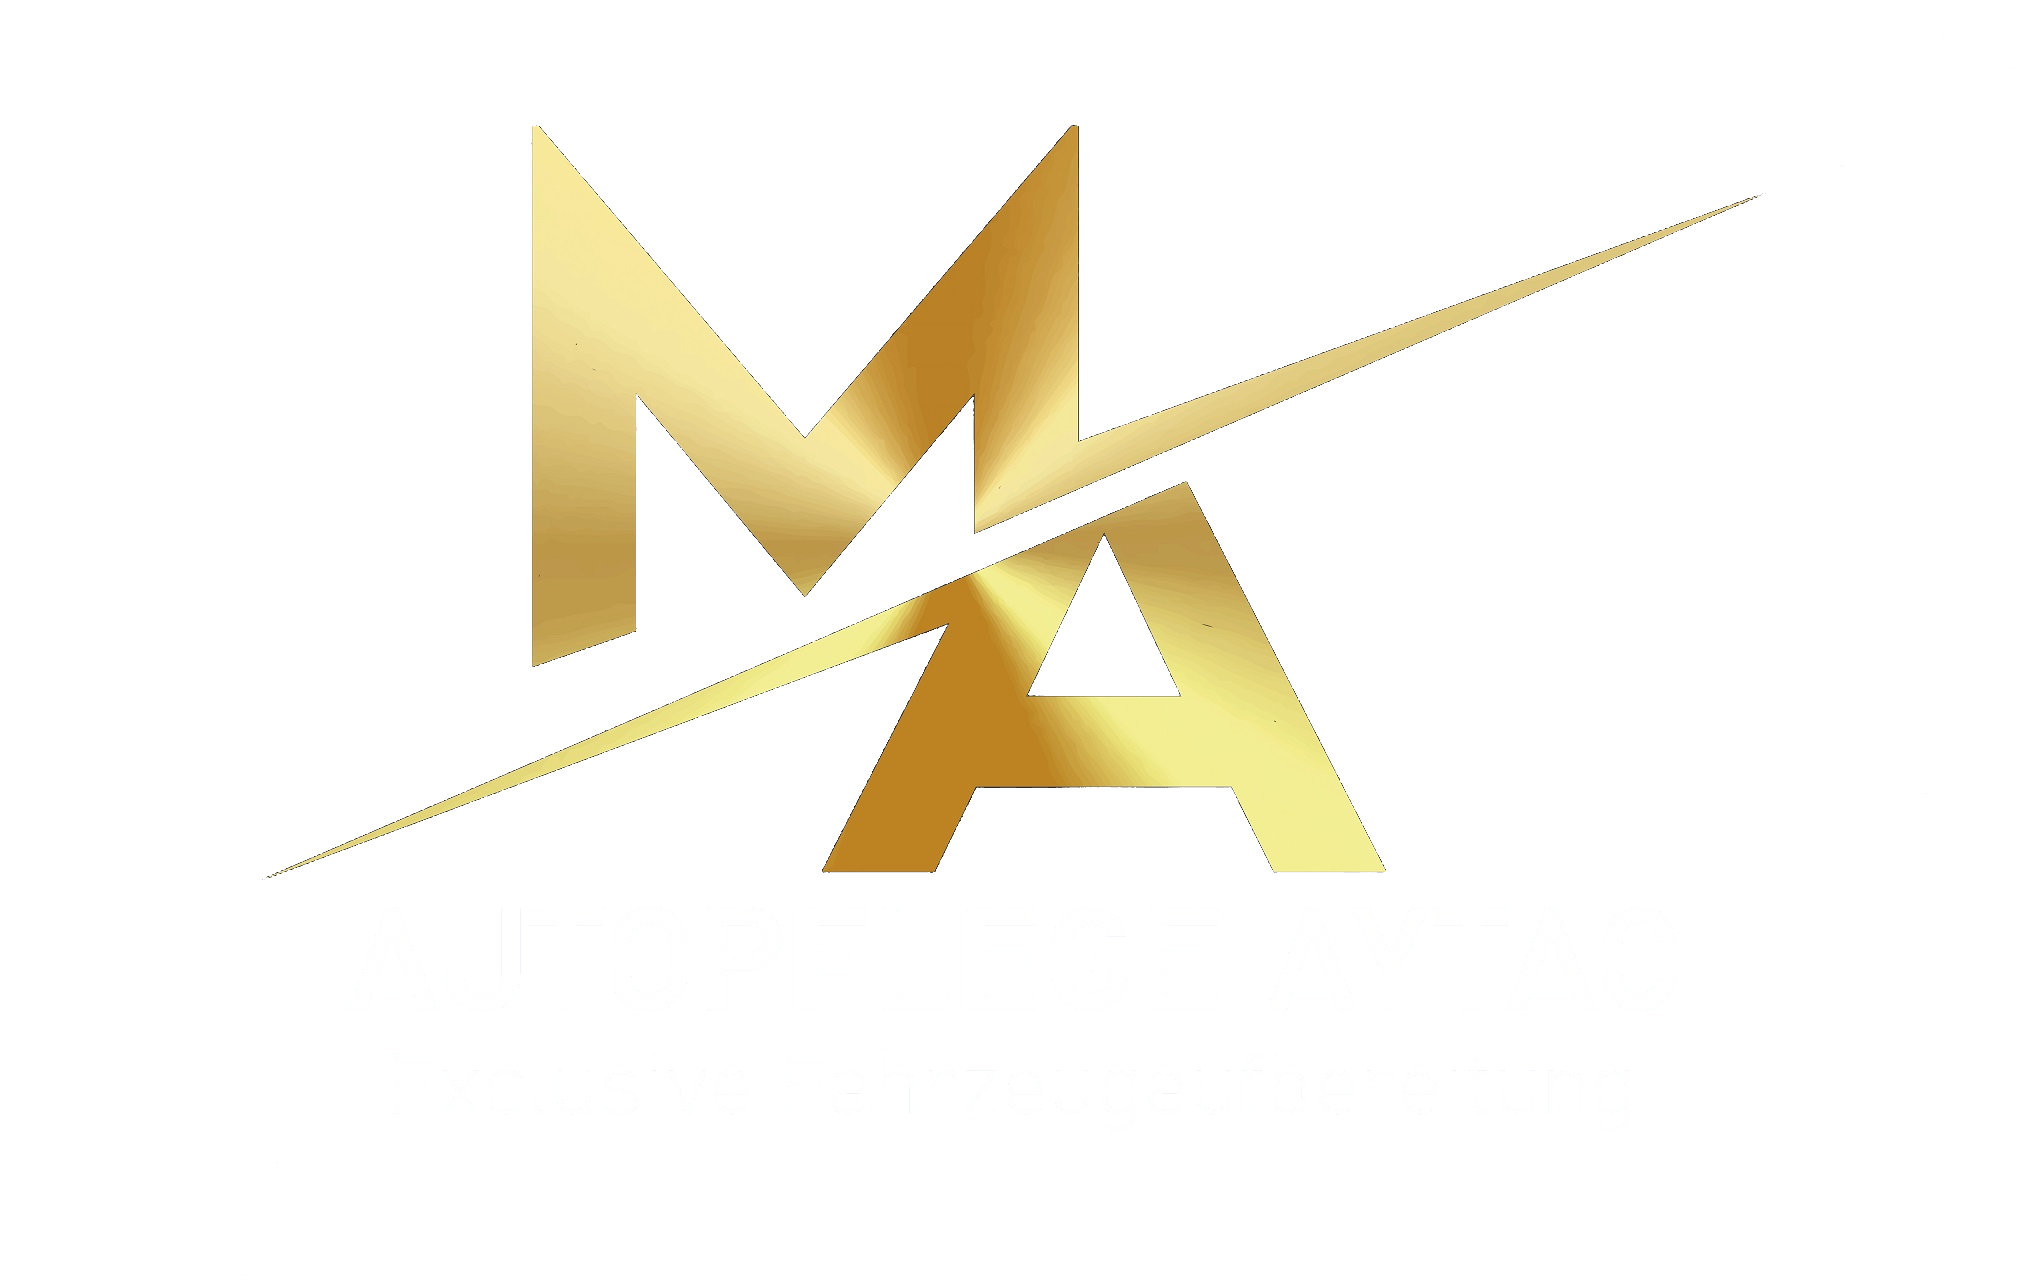 (c) Autopflege-aytac.de